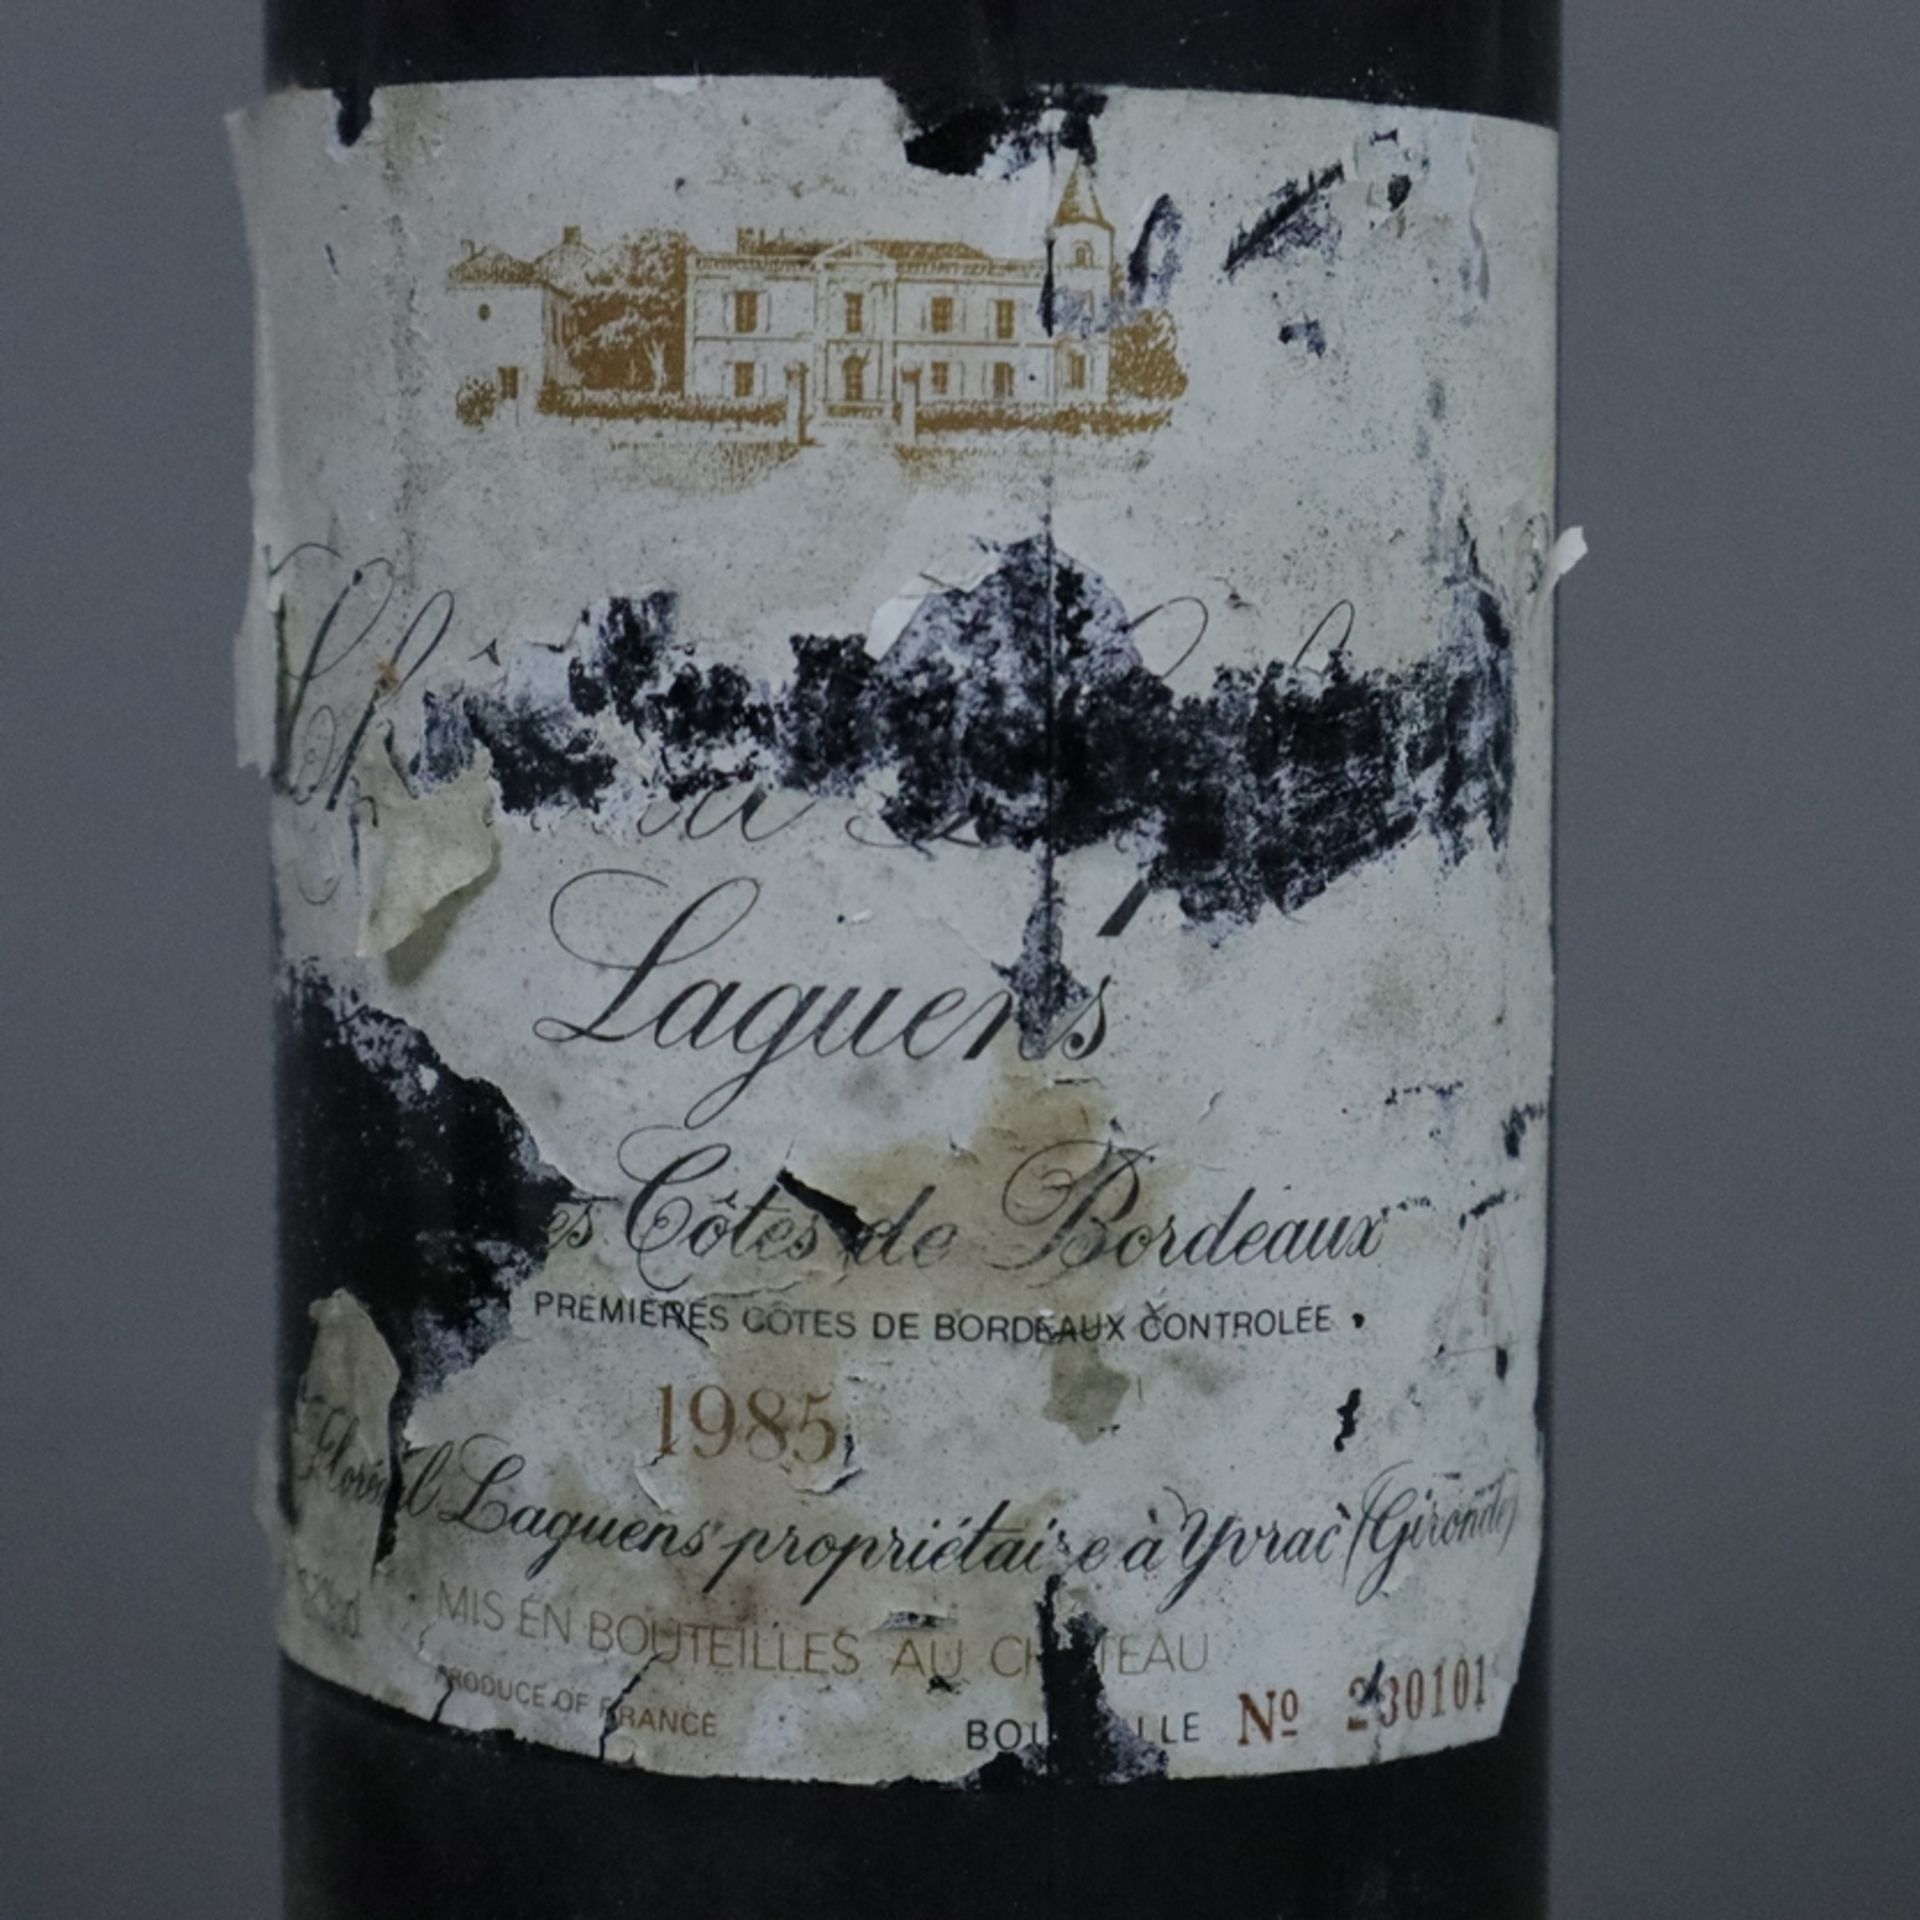 Weinkonvolut - 2 Flaschen - 1985 Château Lafitte-Laguens Côtes de Bordeaux, France, - Image 6 of 9